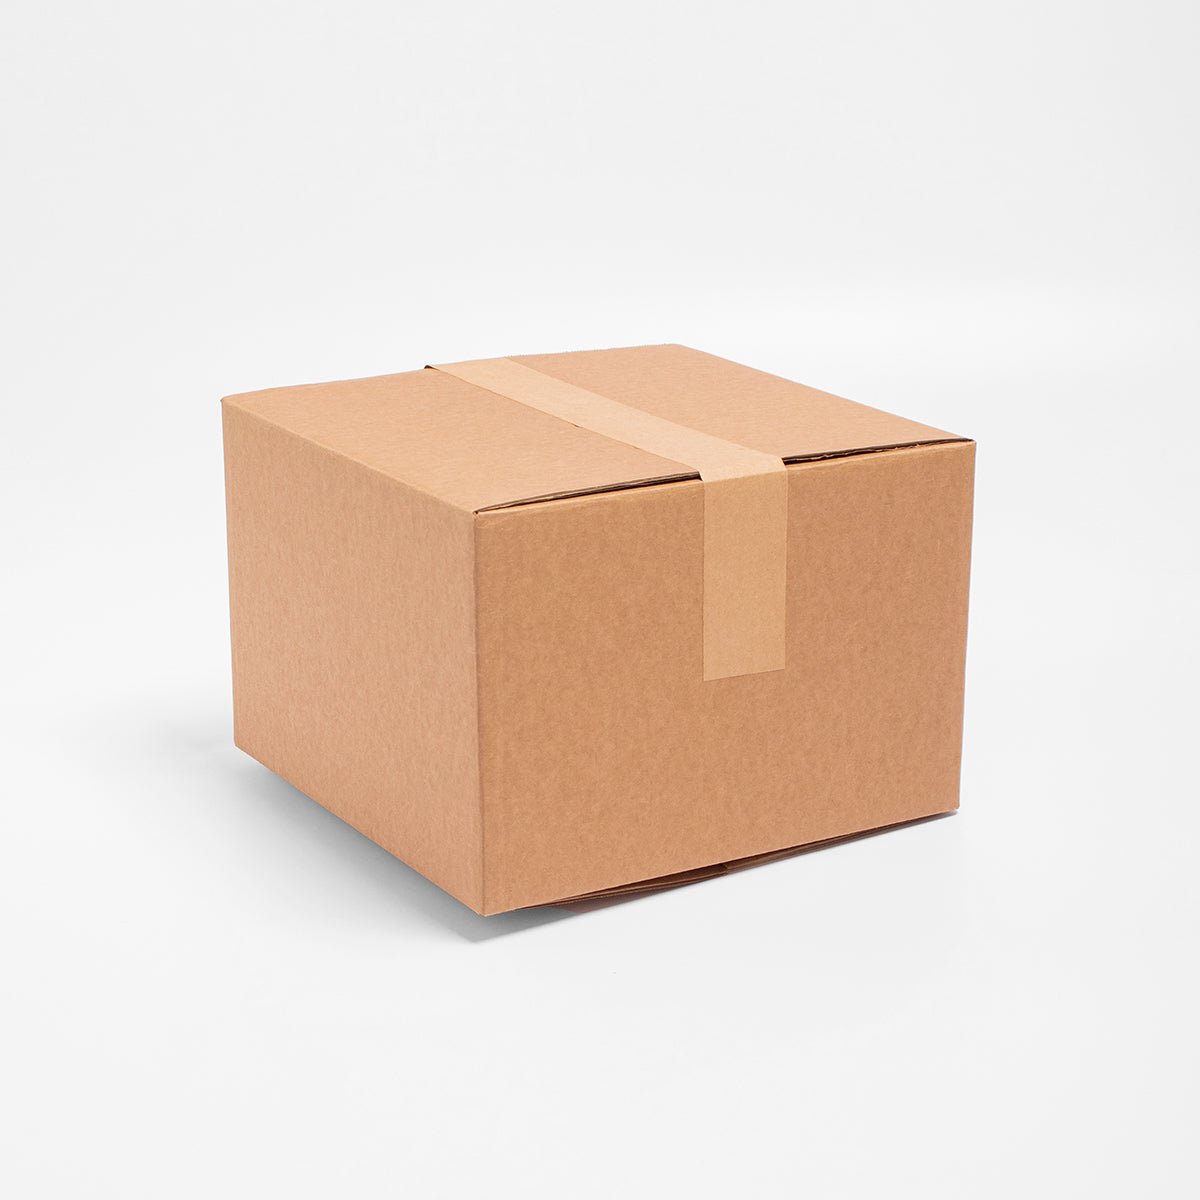 Caja de Cartón - 30 x 30 x 30 cm - Cuadrada - Skyboxes México